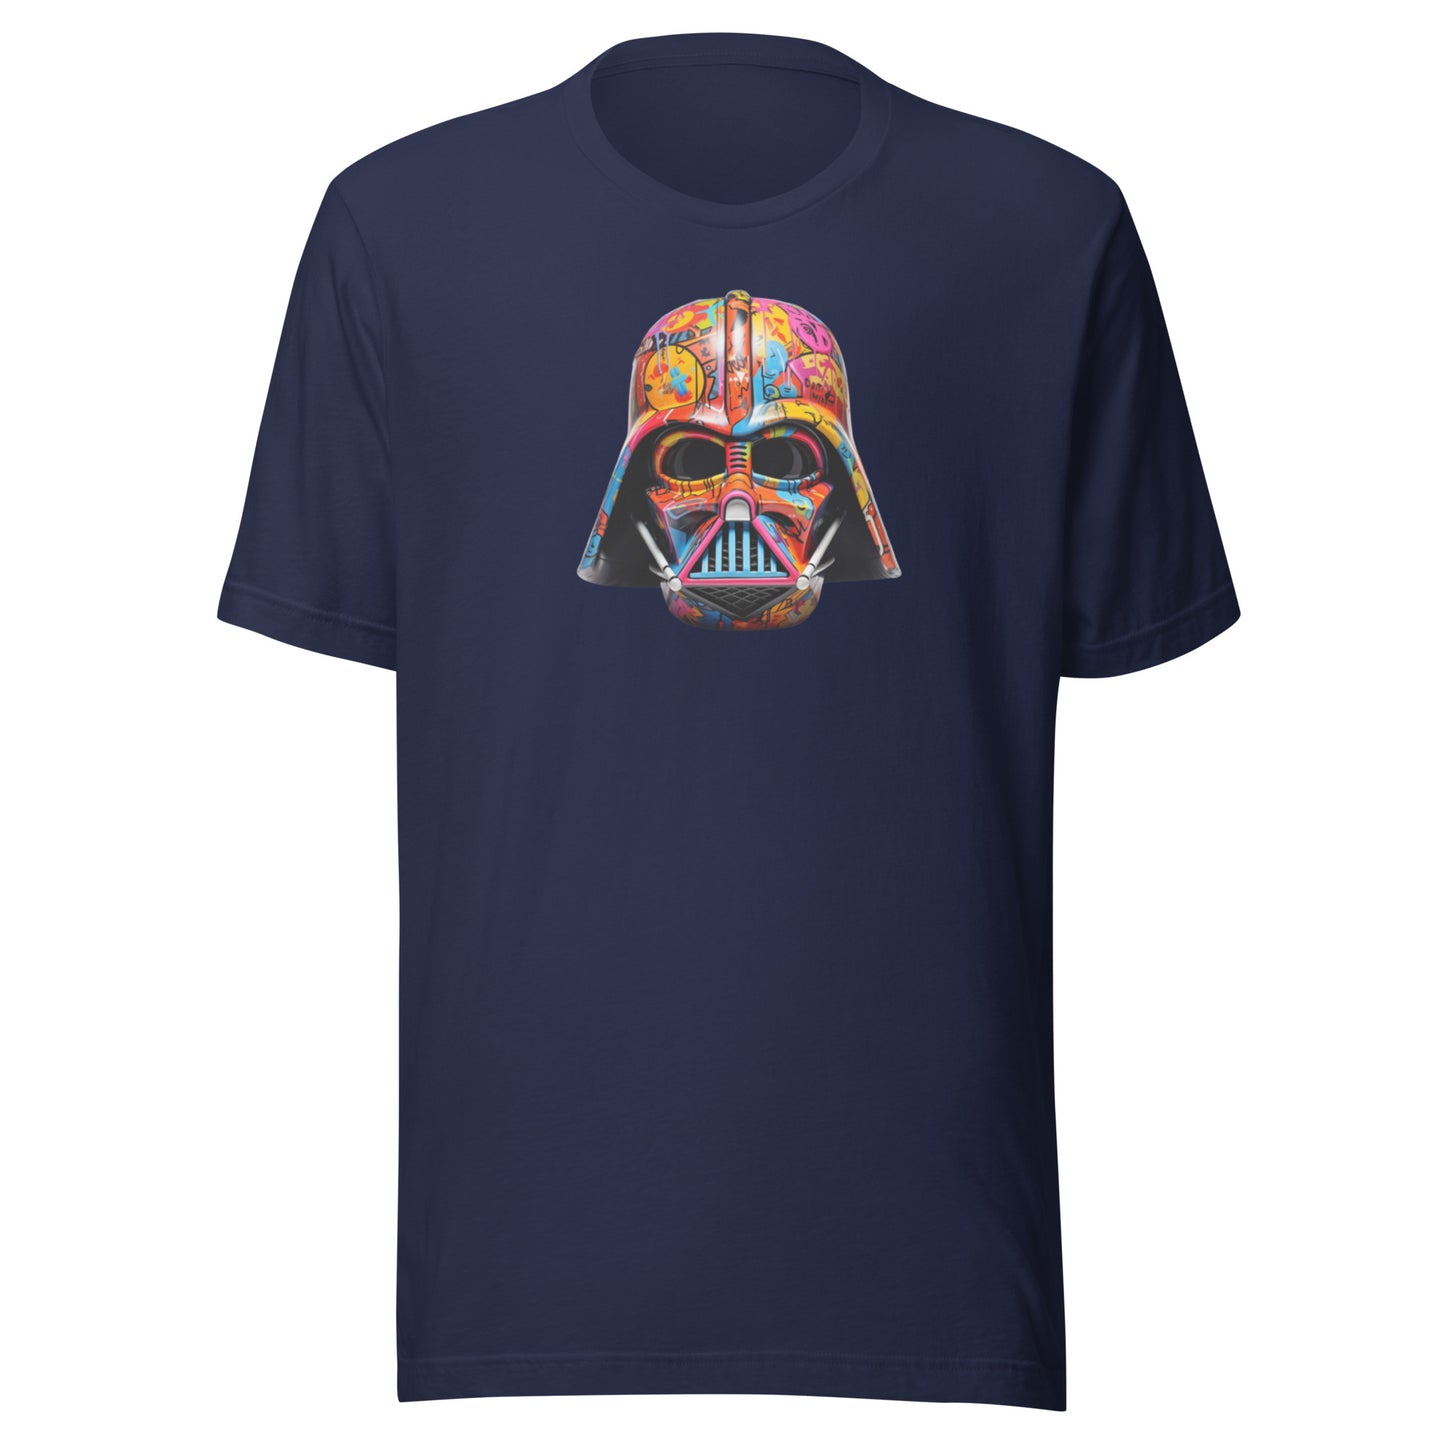 Darth Vader Shirt, Star War Shirt, Vader Helmet Graffiti Shirt, Movie Tee,